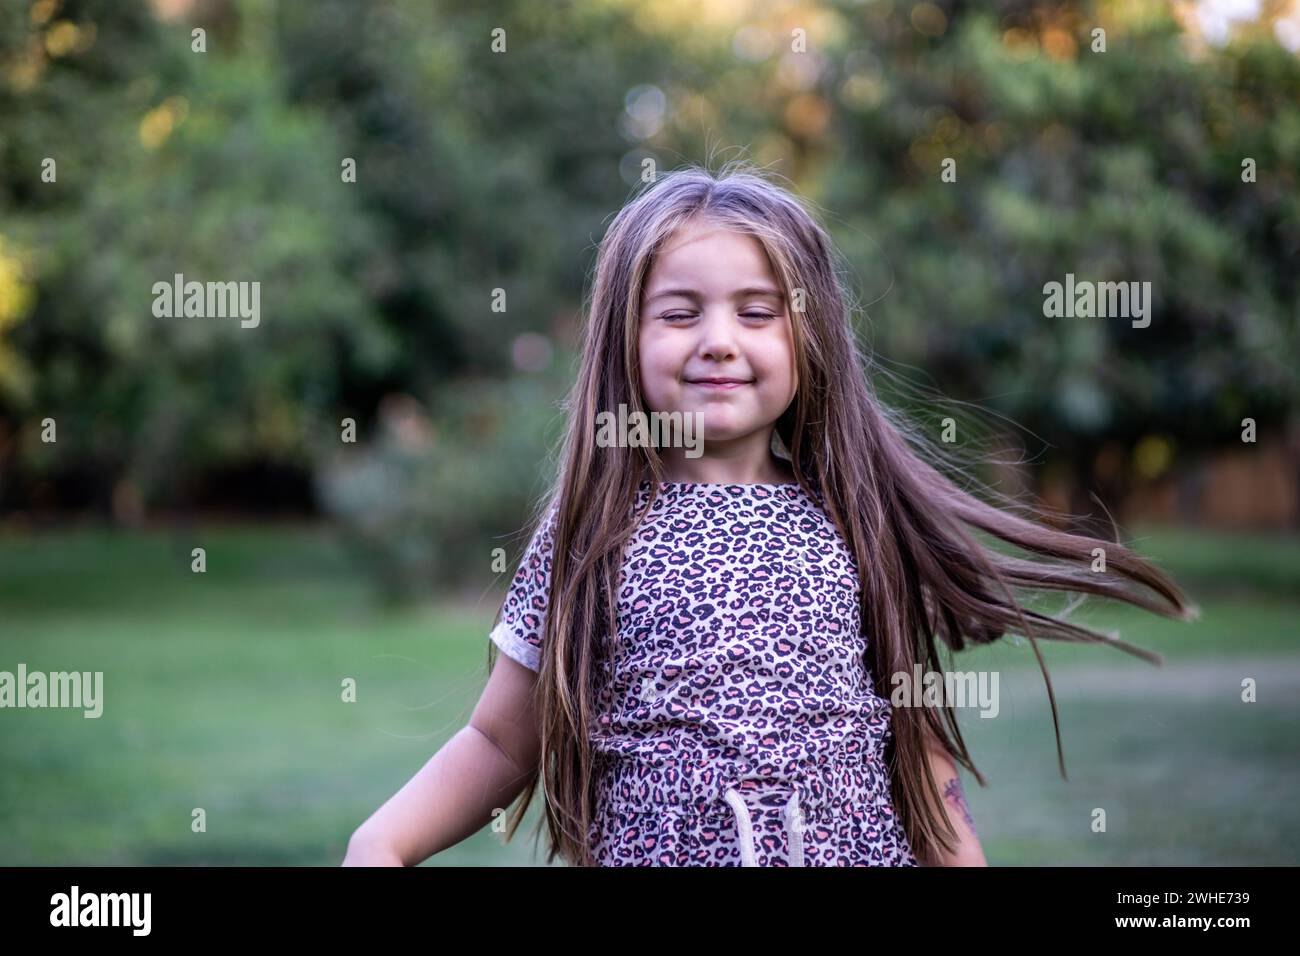 Hermosa muchacha rubia con gracia mientras disfruta de la naturaleza en un escenario al aire libre lleno de verdor y luz y recostada en el césped Stock Photo